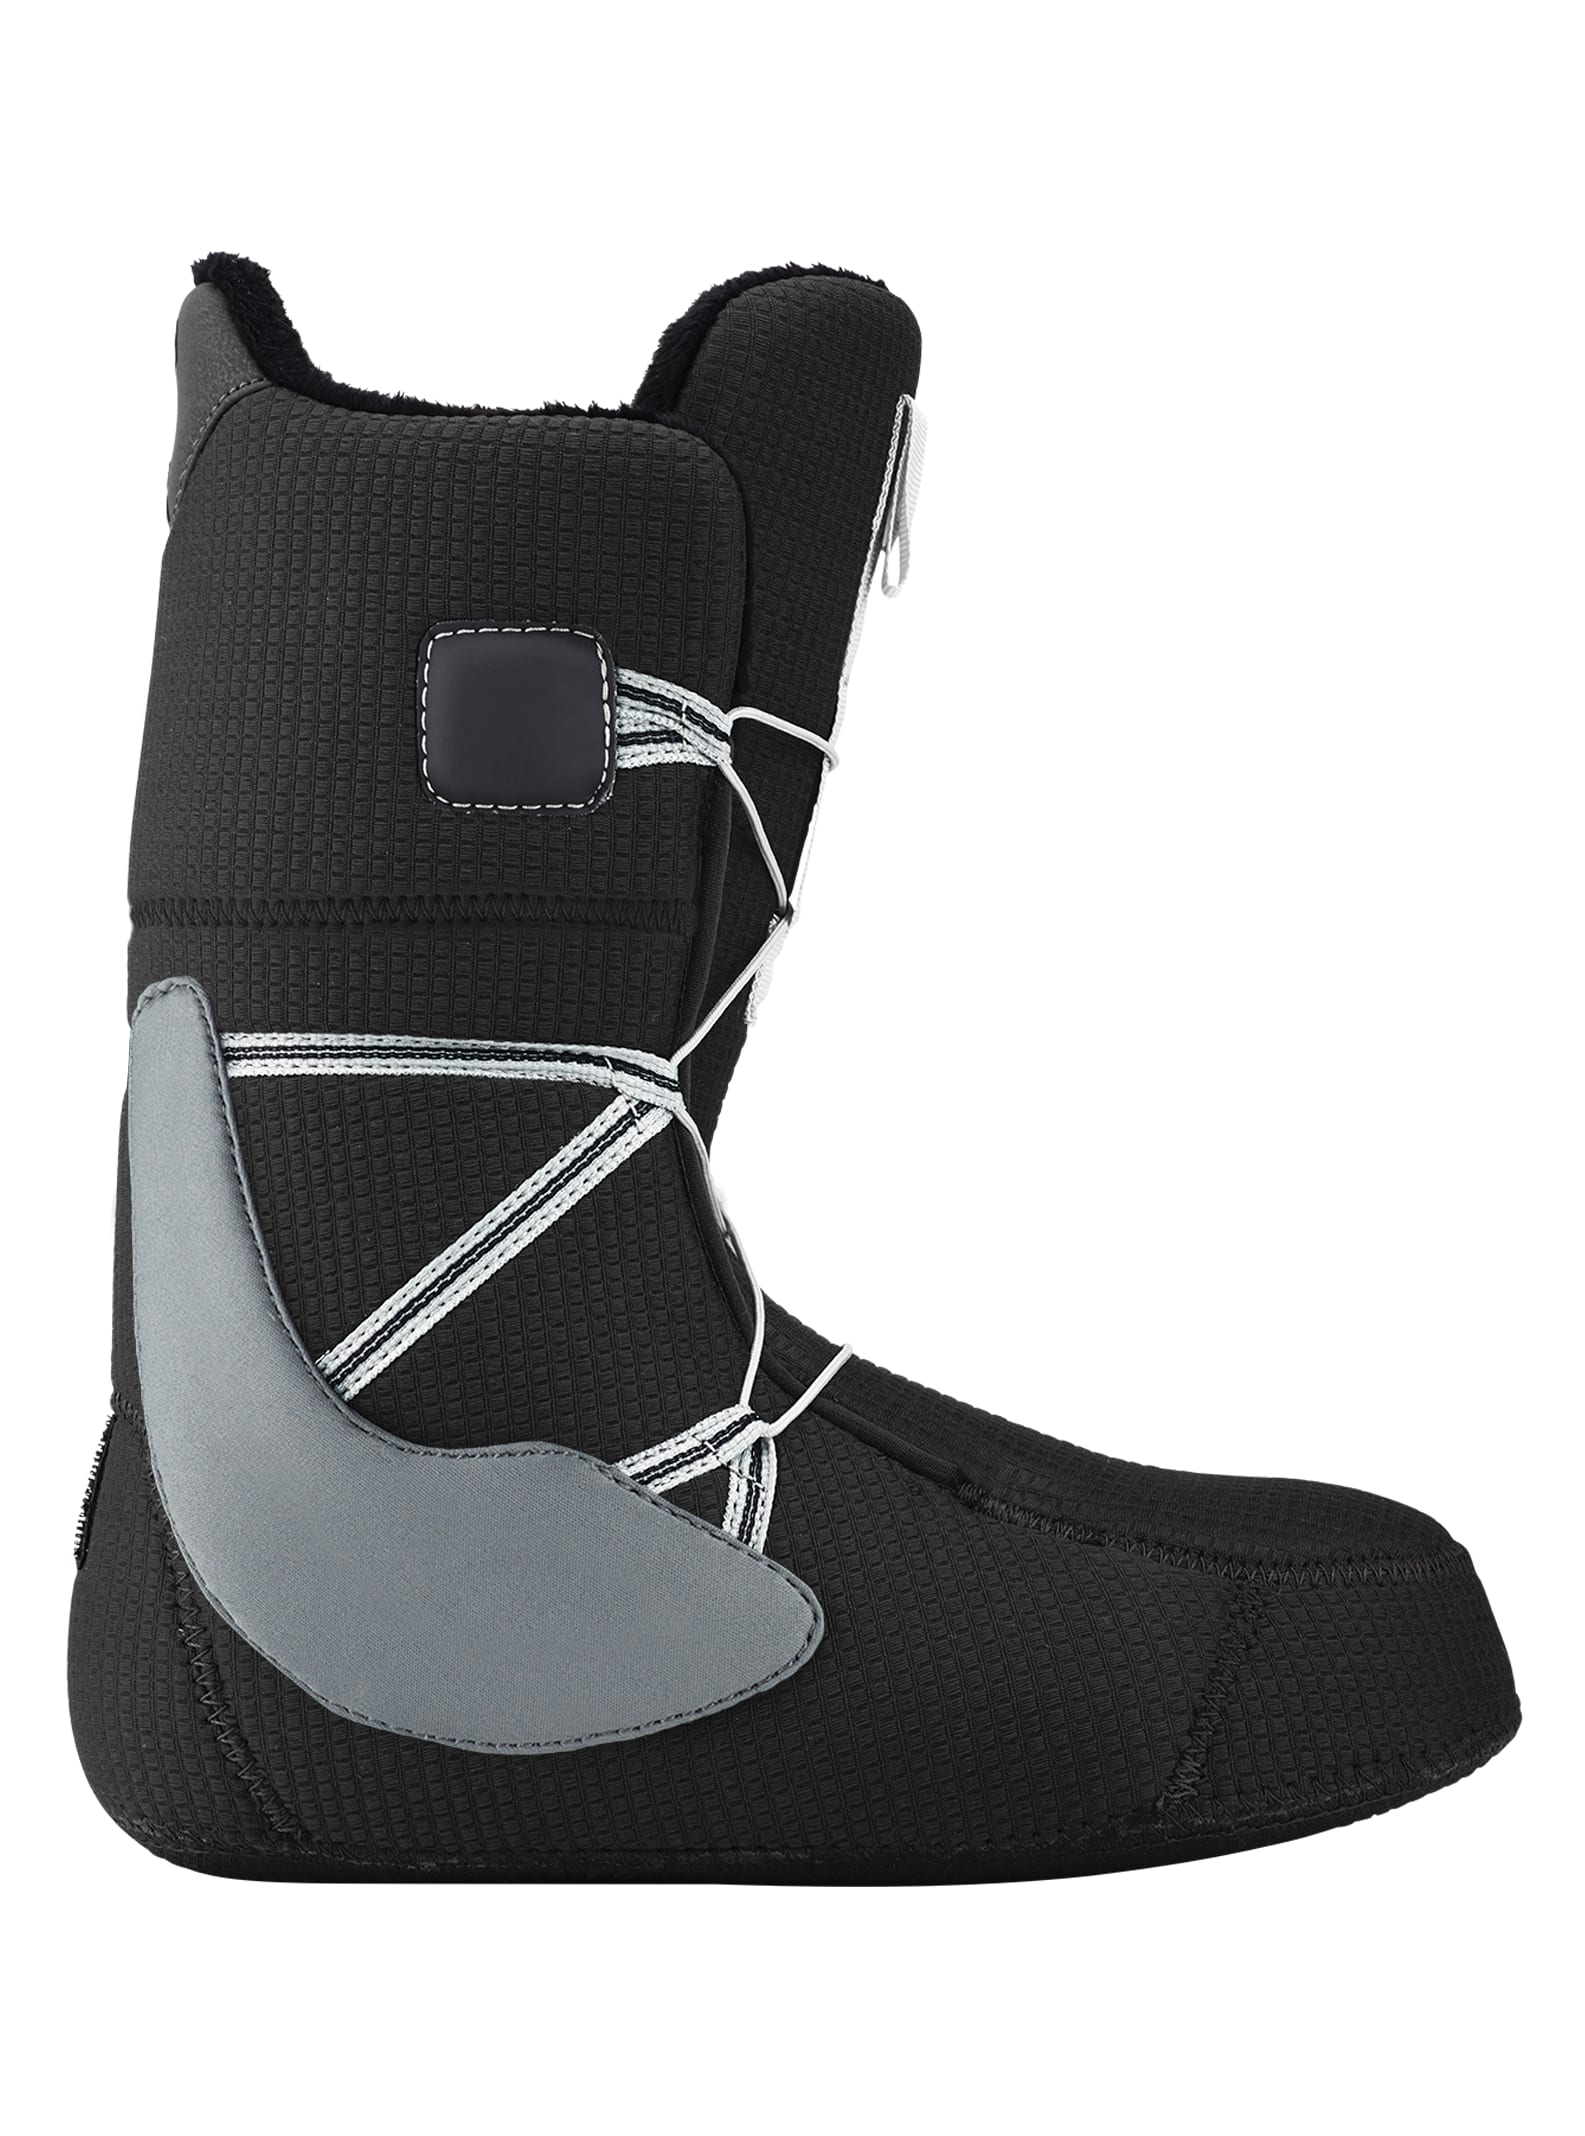 Burton Moto Black Herren Snowboard Boot 